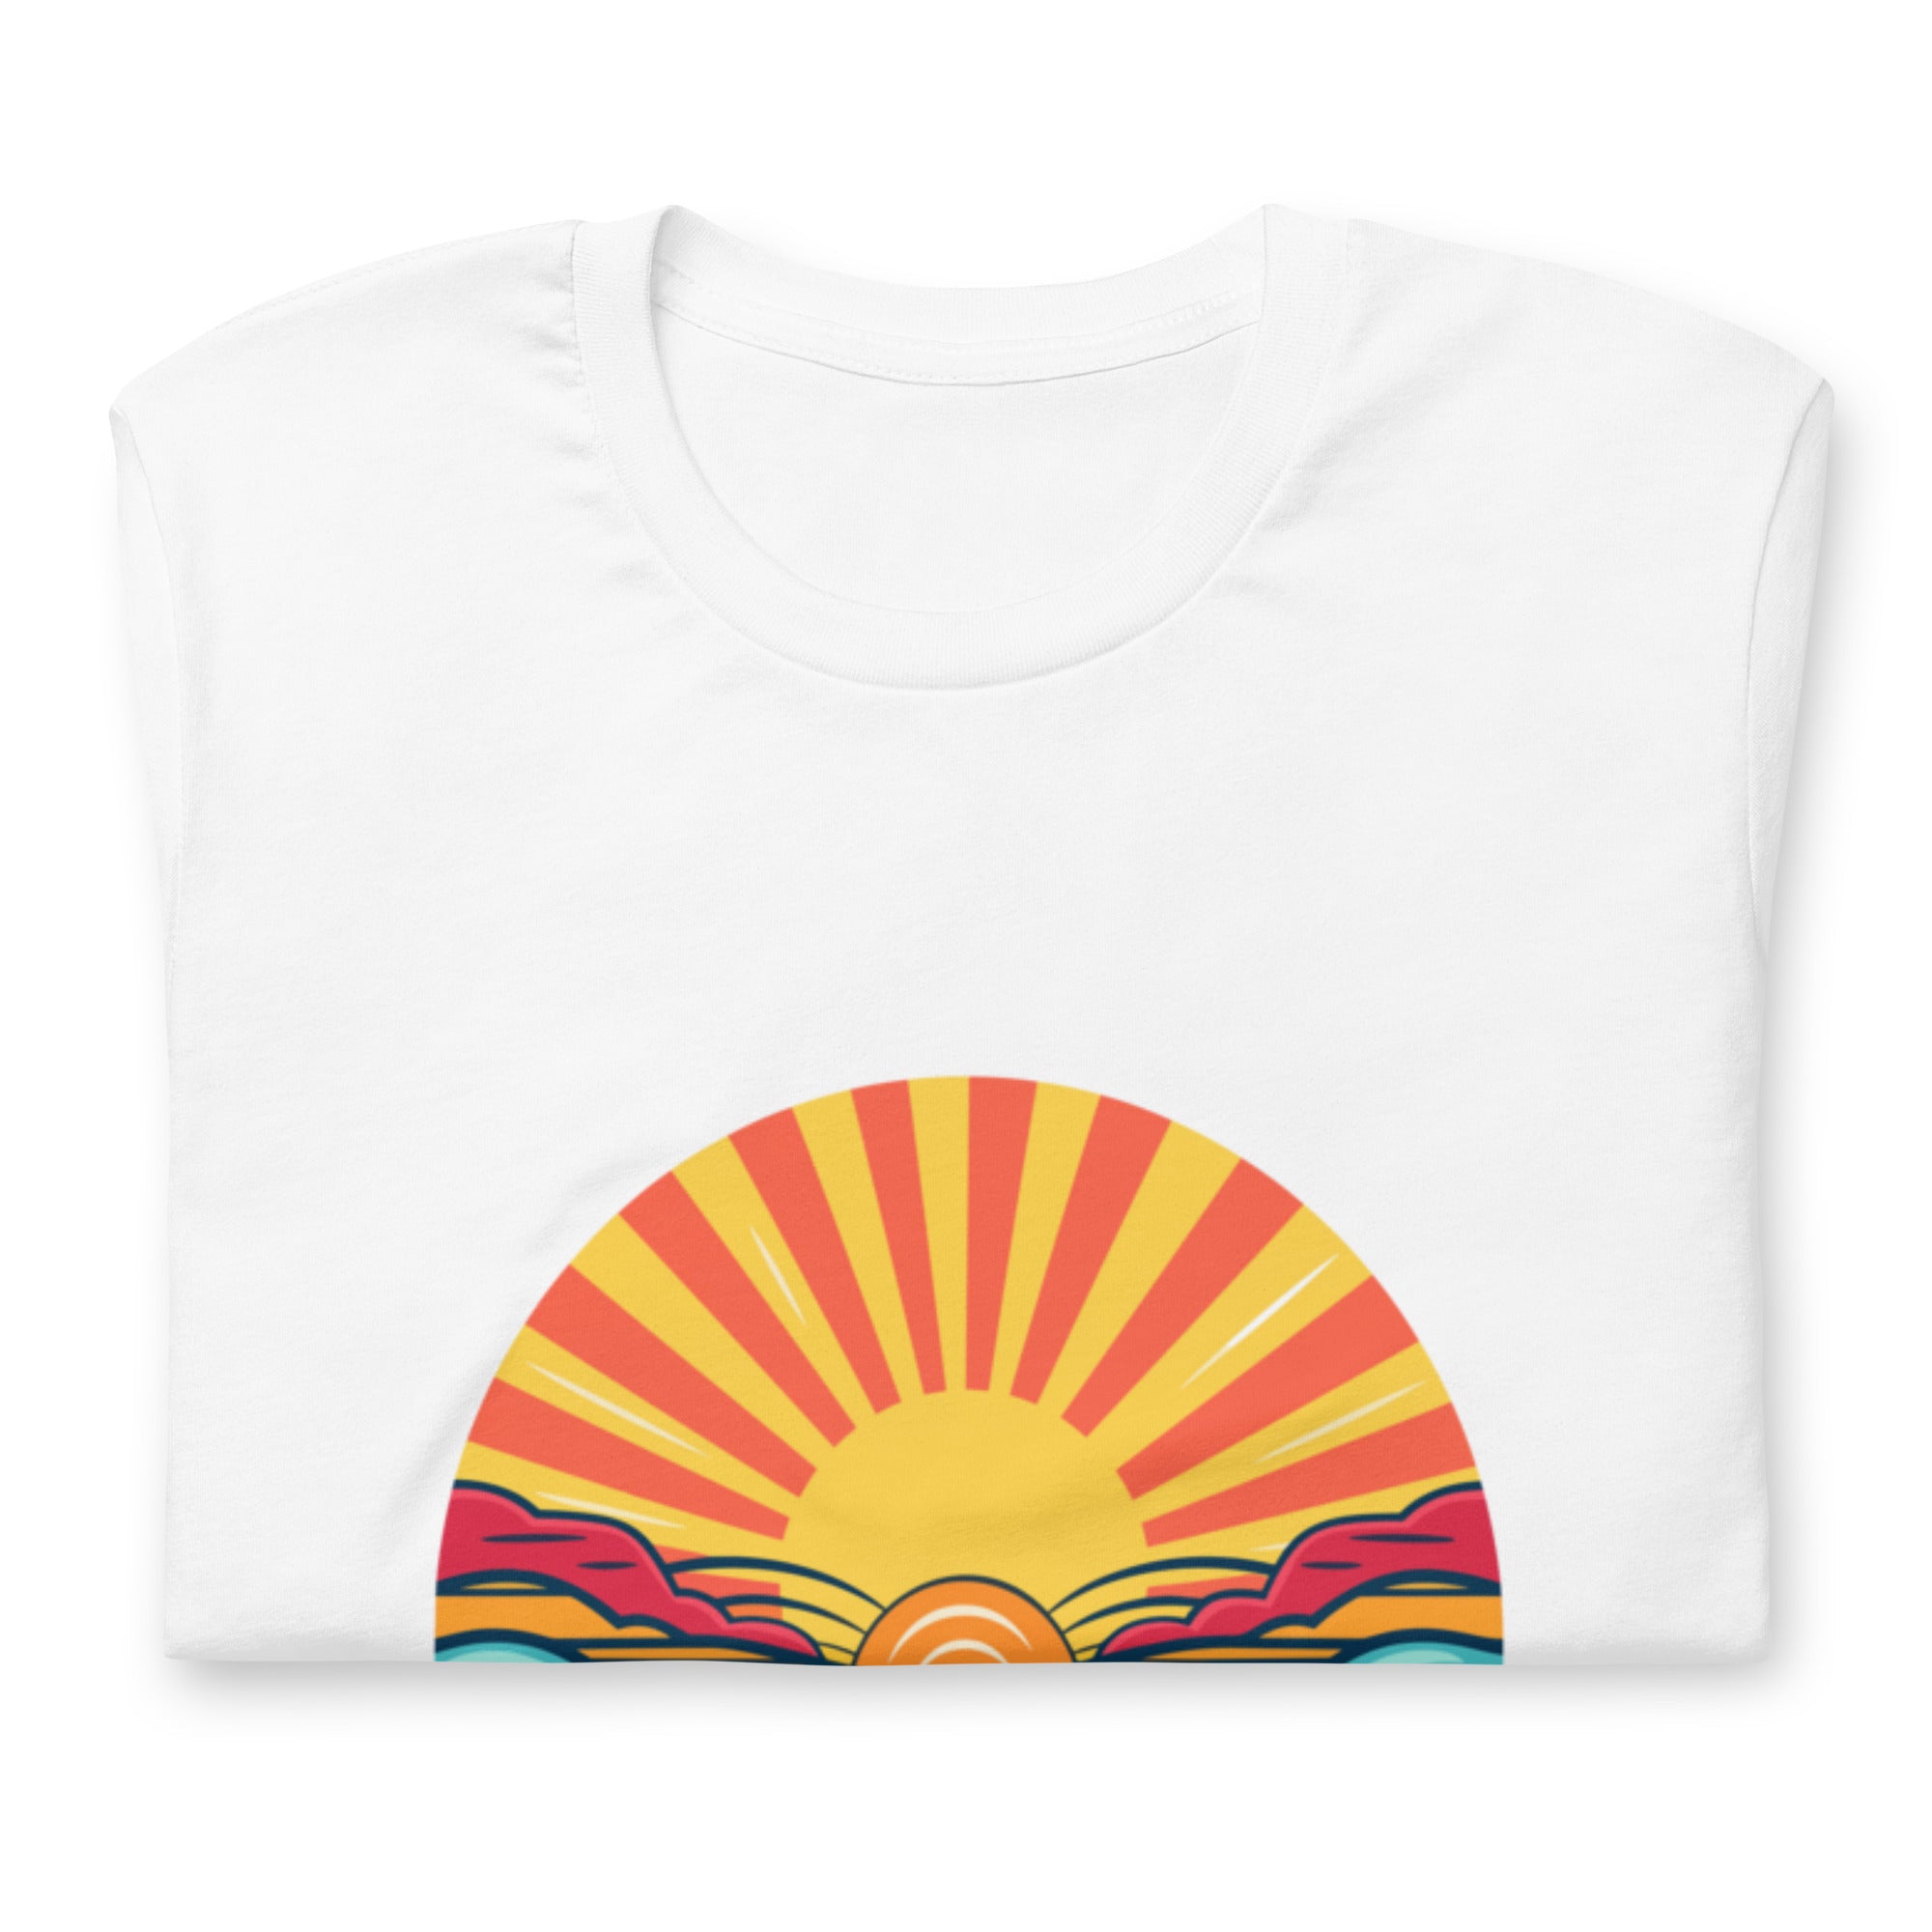 Nostalgic Retro Sunset Rays Graphic Unisex t-shirt